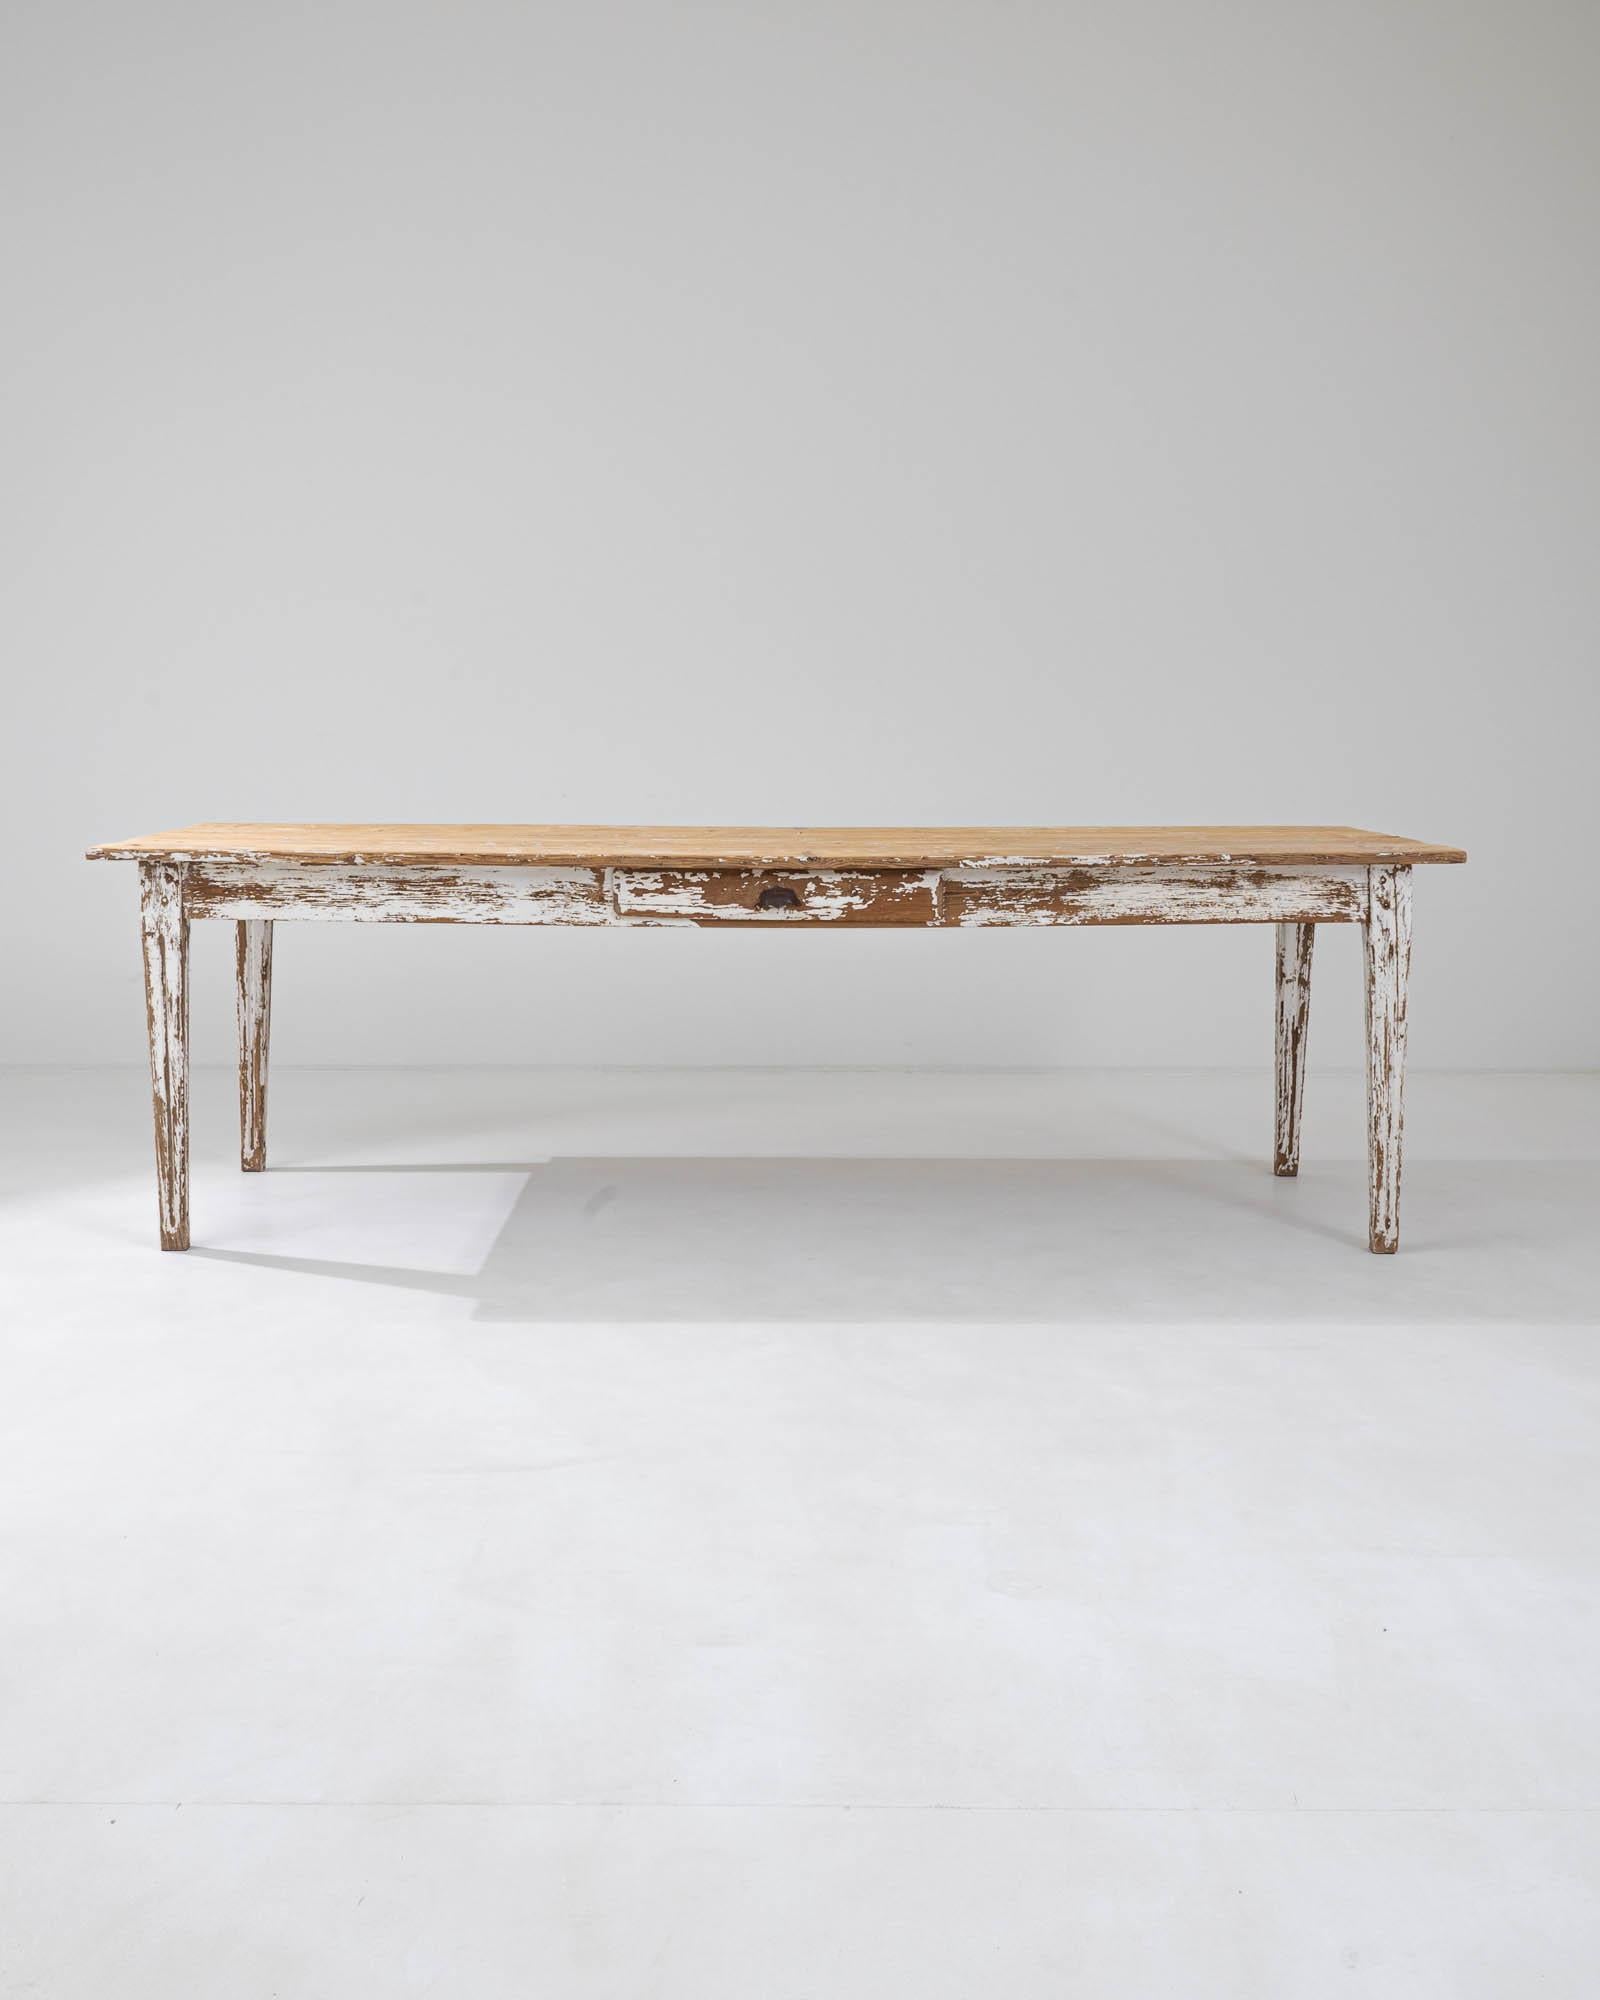 Dieser Esstisch im Vintage-Stil kombiniert eine schlichte Form mit einer heimeligen Patina, die ihm einen zeitlosen Charme verleiht. Die lange, rechteckige Tischplatte, die Anfang des 20. Jahrhunderts in Frankreich handgefertigt wurde, ruht auf